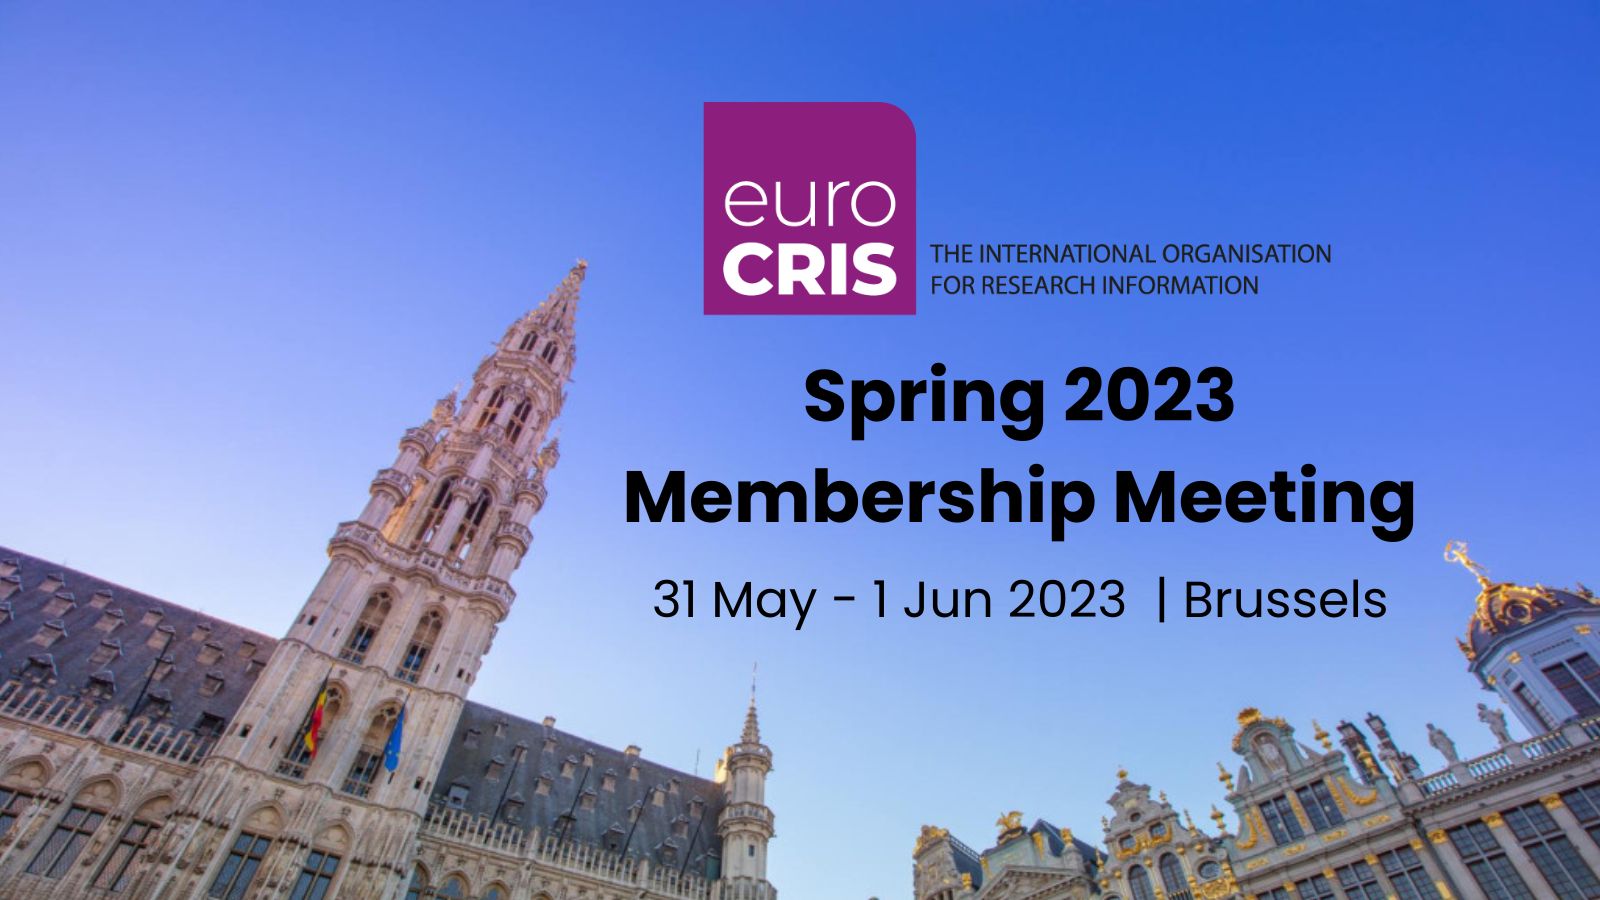 euroCRIS Spring 2023 Meeting